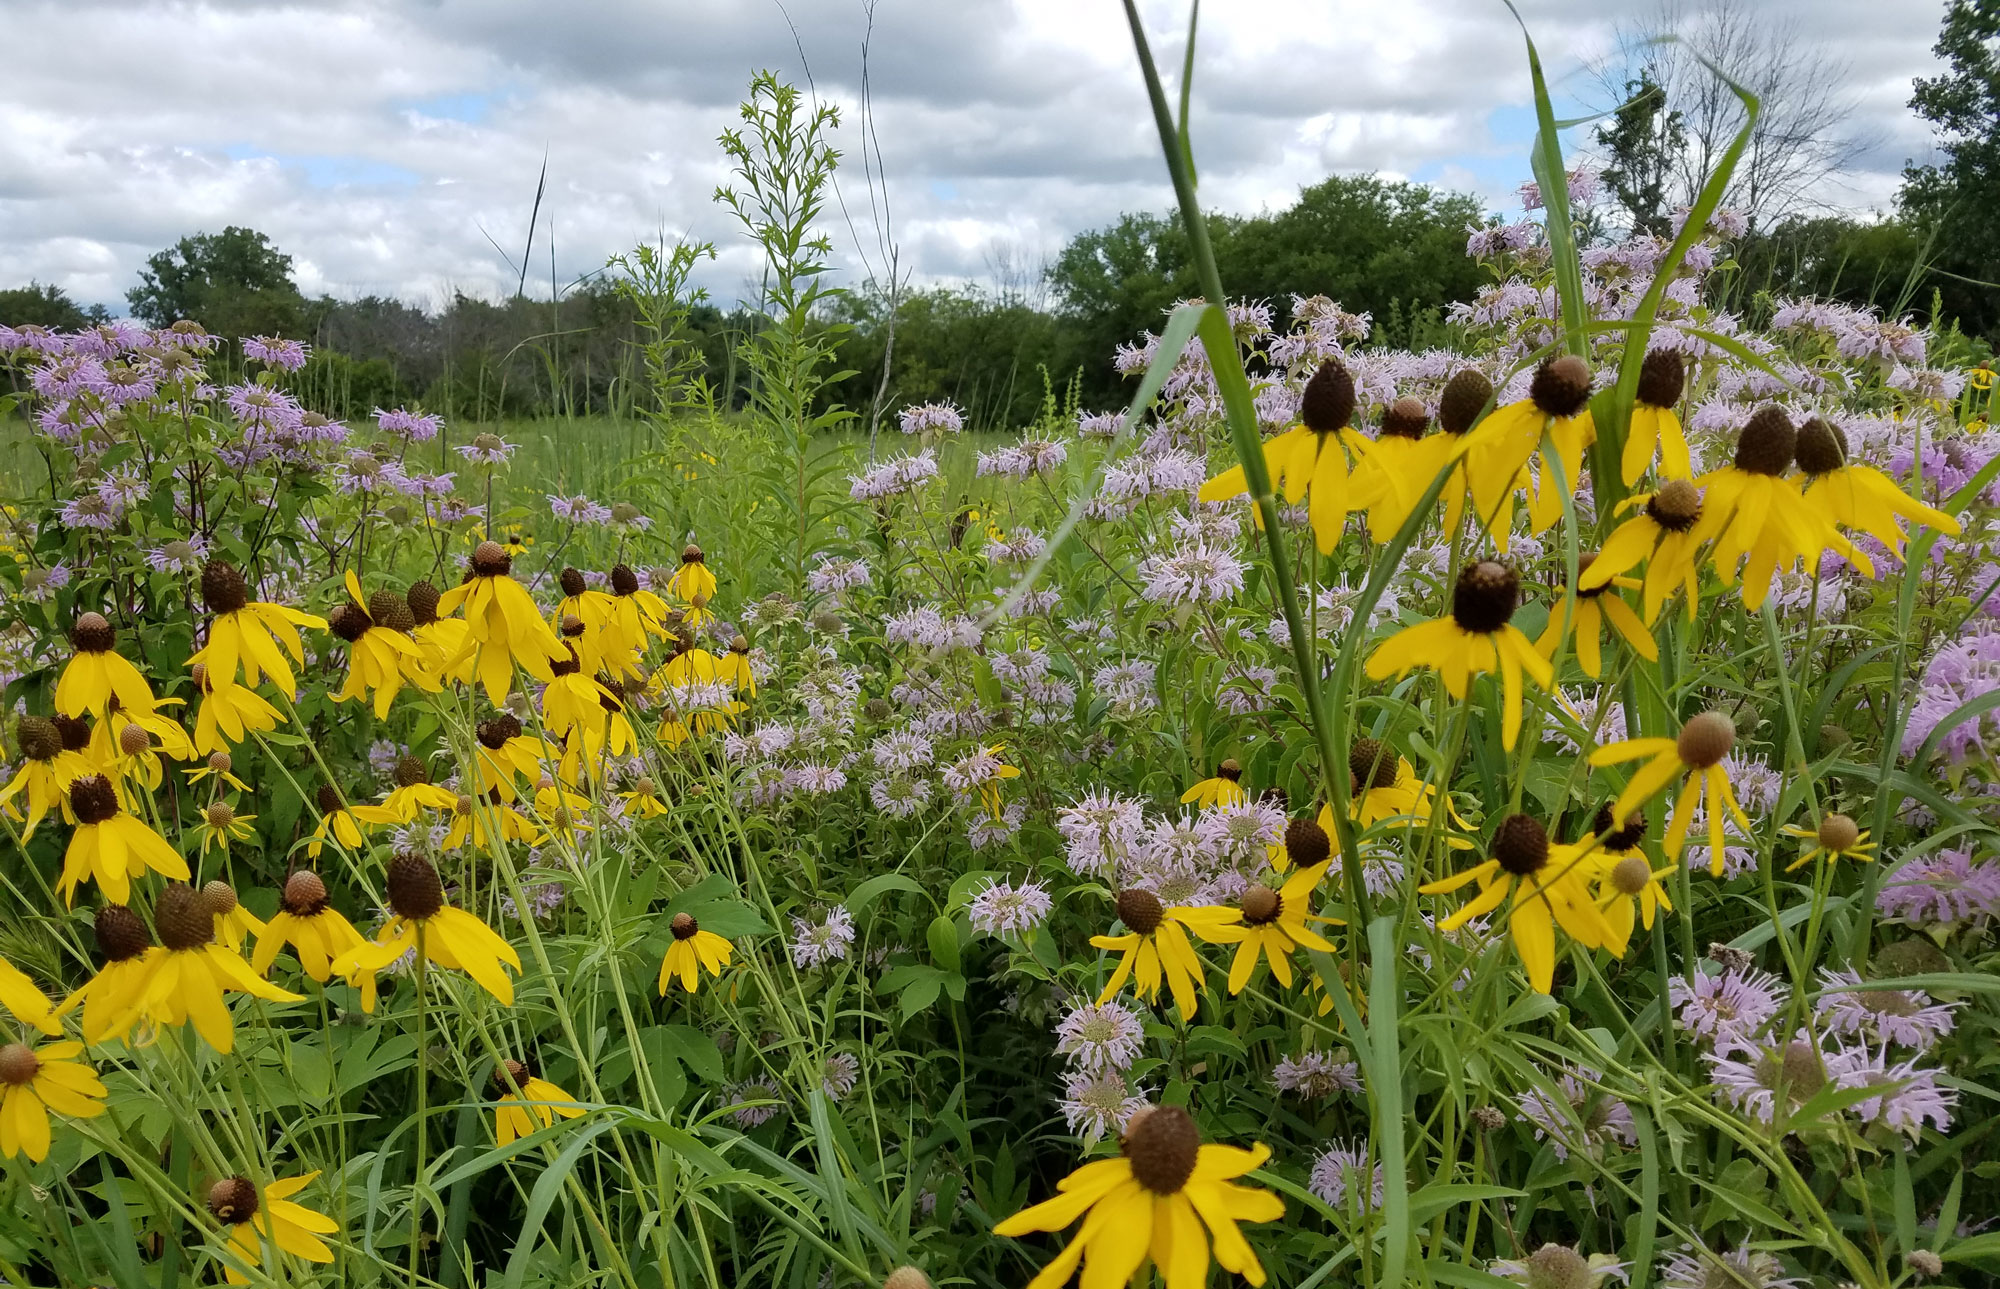 Prairie wildflowers in a field.